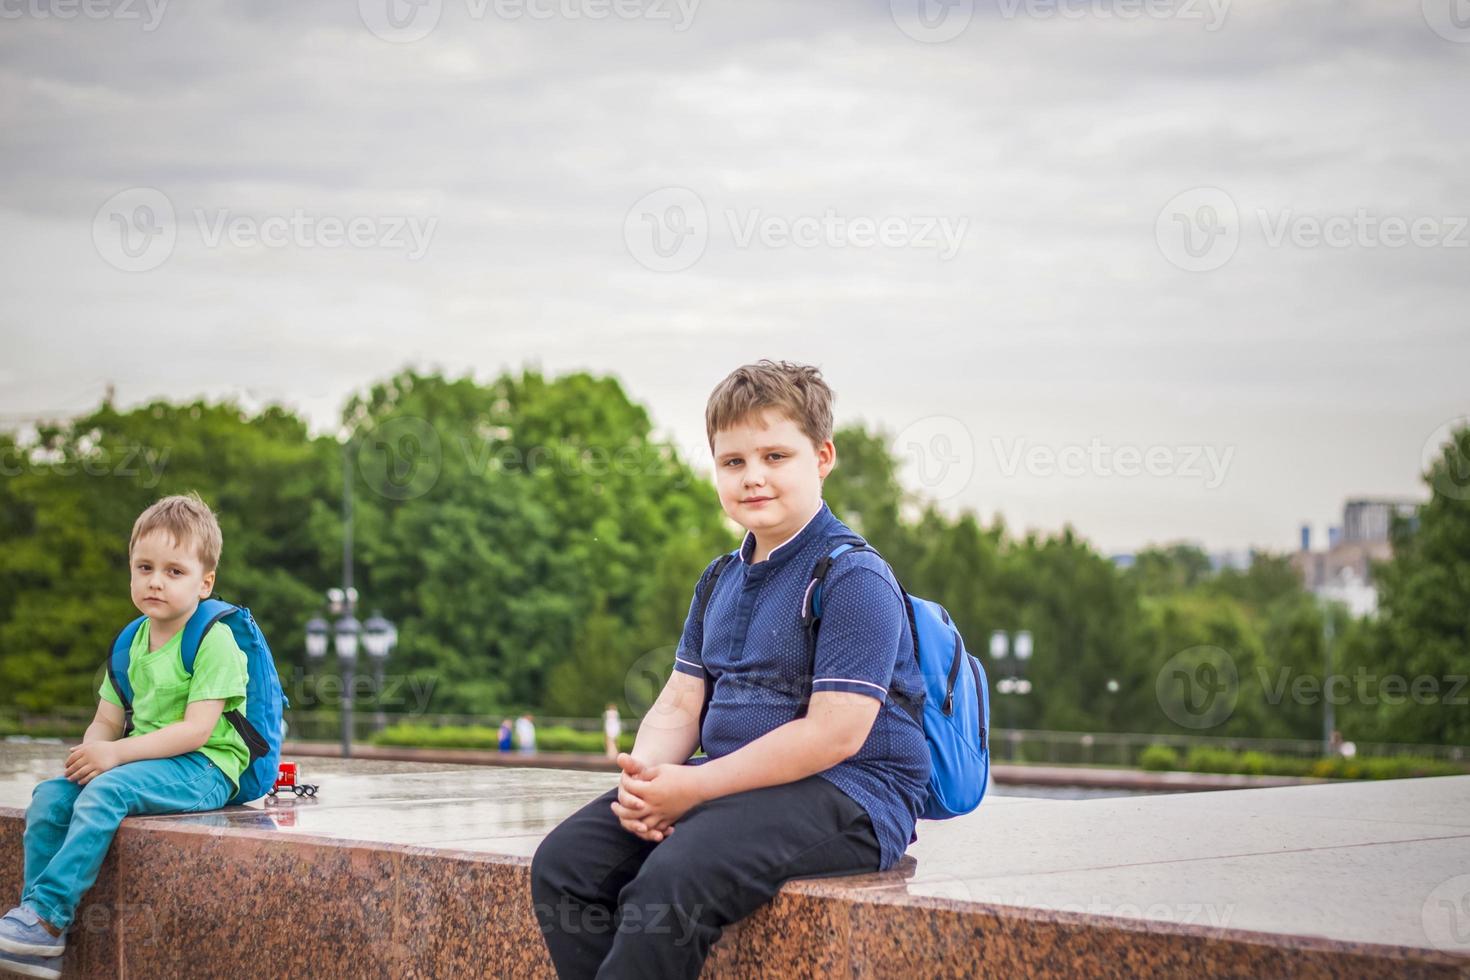 portret van een kind, een jongen tegen de backdrop van stedelijk landschappen van wolkenkrabbers en hoogbouw gebouwen in de Open lucht. kinderen, reizen. levensstijl in de stad. centrum, straten. foto